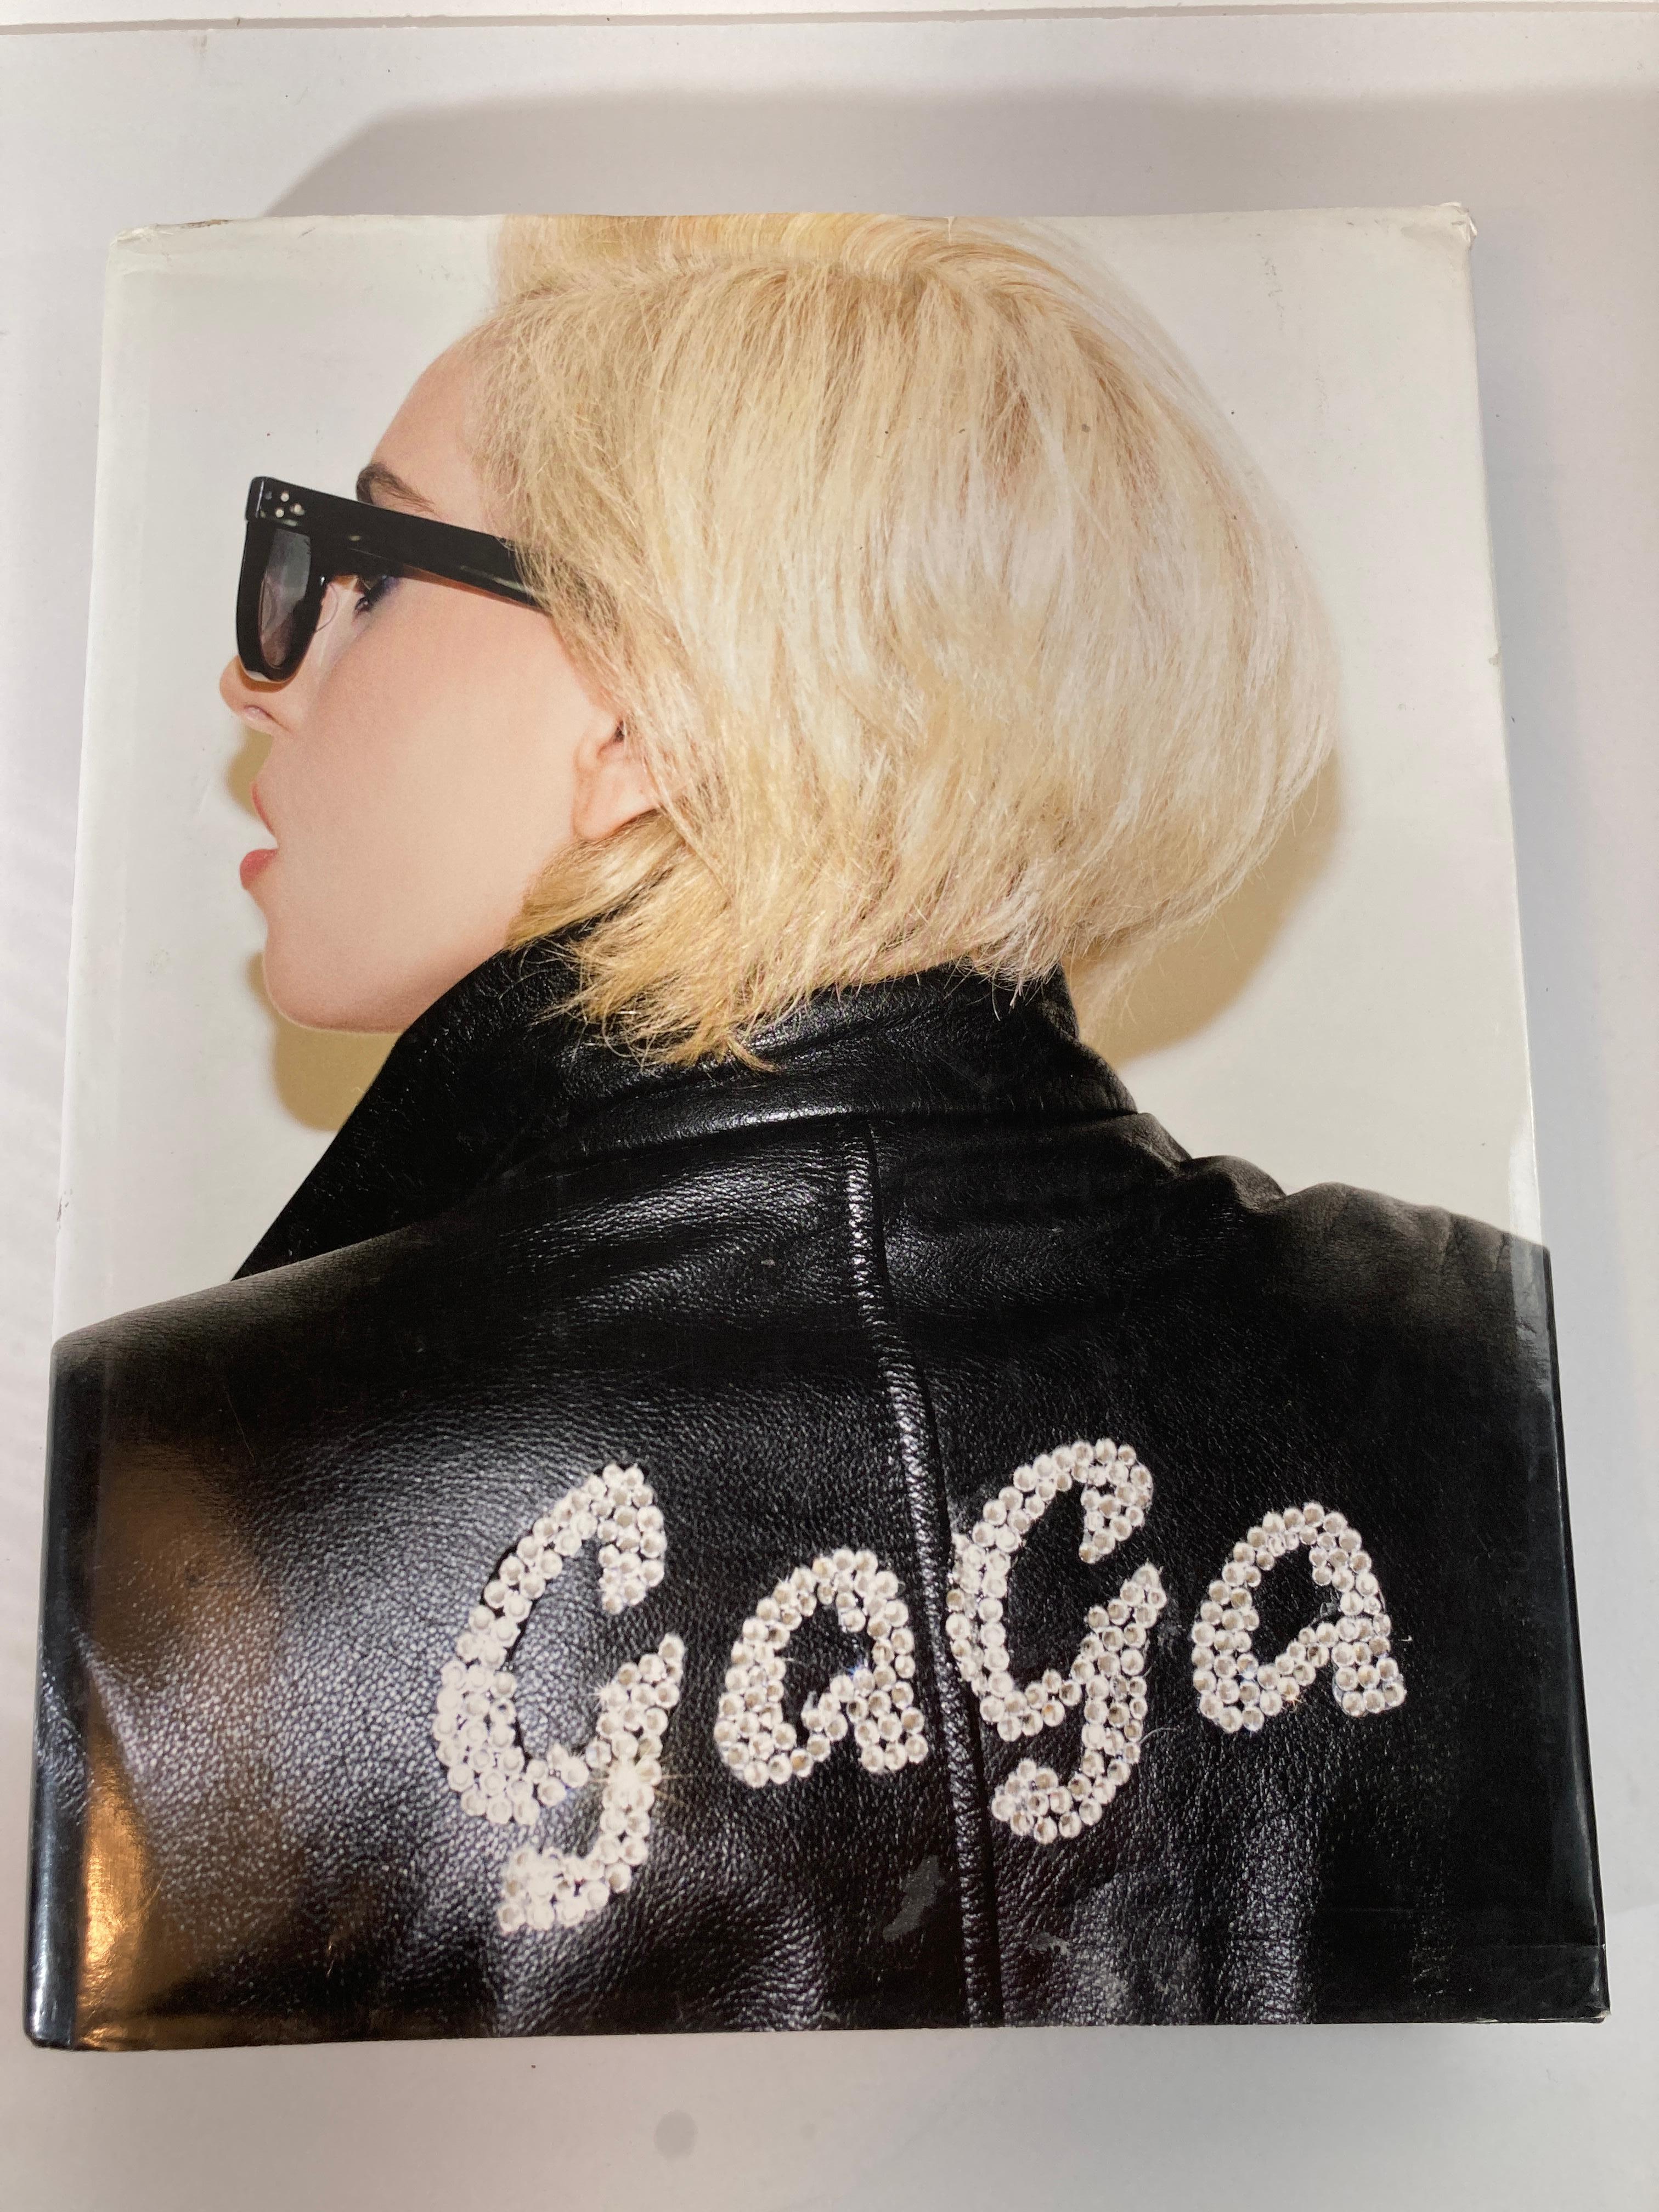 Lady Gaga X Terry Richardson grand livre à couverture rigide.
Gros caractères, 22 novembre 2011
A propos de l'auteur
Lady Gaga s'est fait connaître après la sortie de son premier album studio The Fame (2008), qui comprenait les tubes 